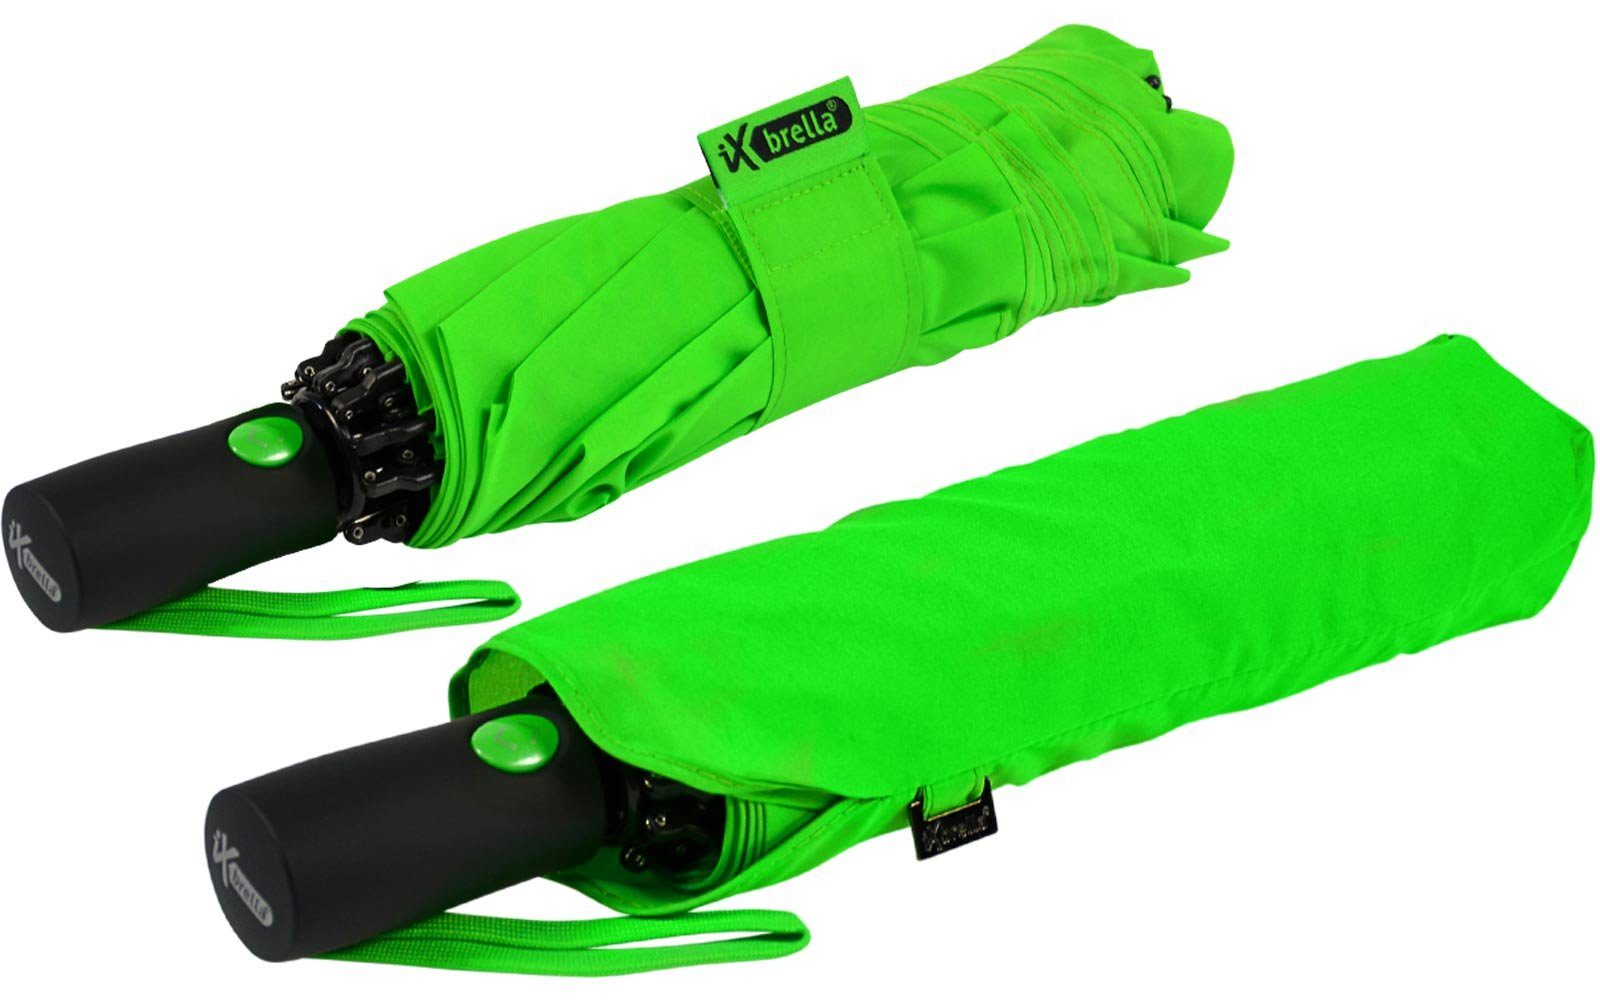 Reverse Speichen bunten mit stabilen neon-grün Taschenregenschirm öffnender Fiberglas-Automatiksch, iX-brella umgekehrt